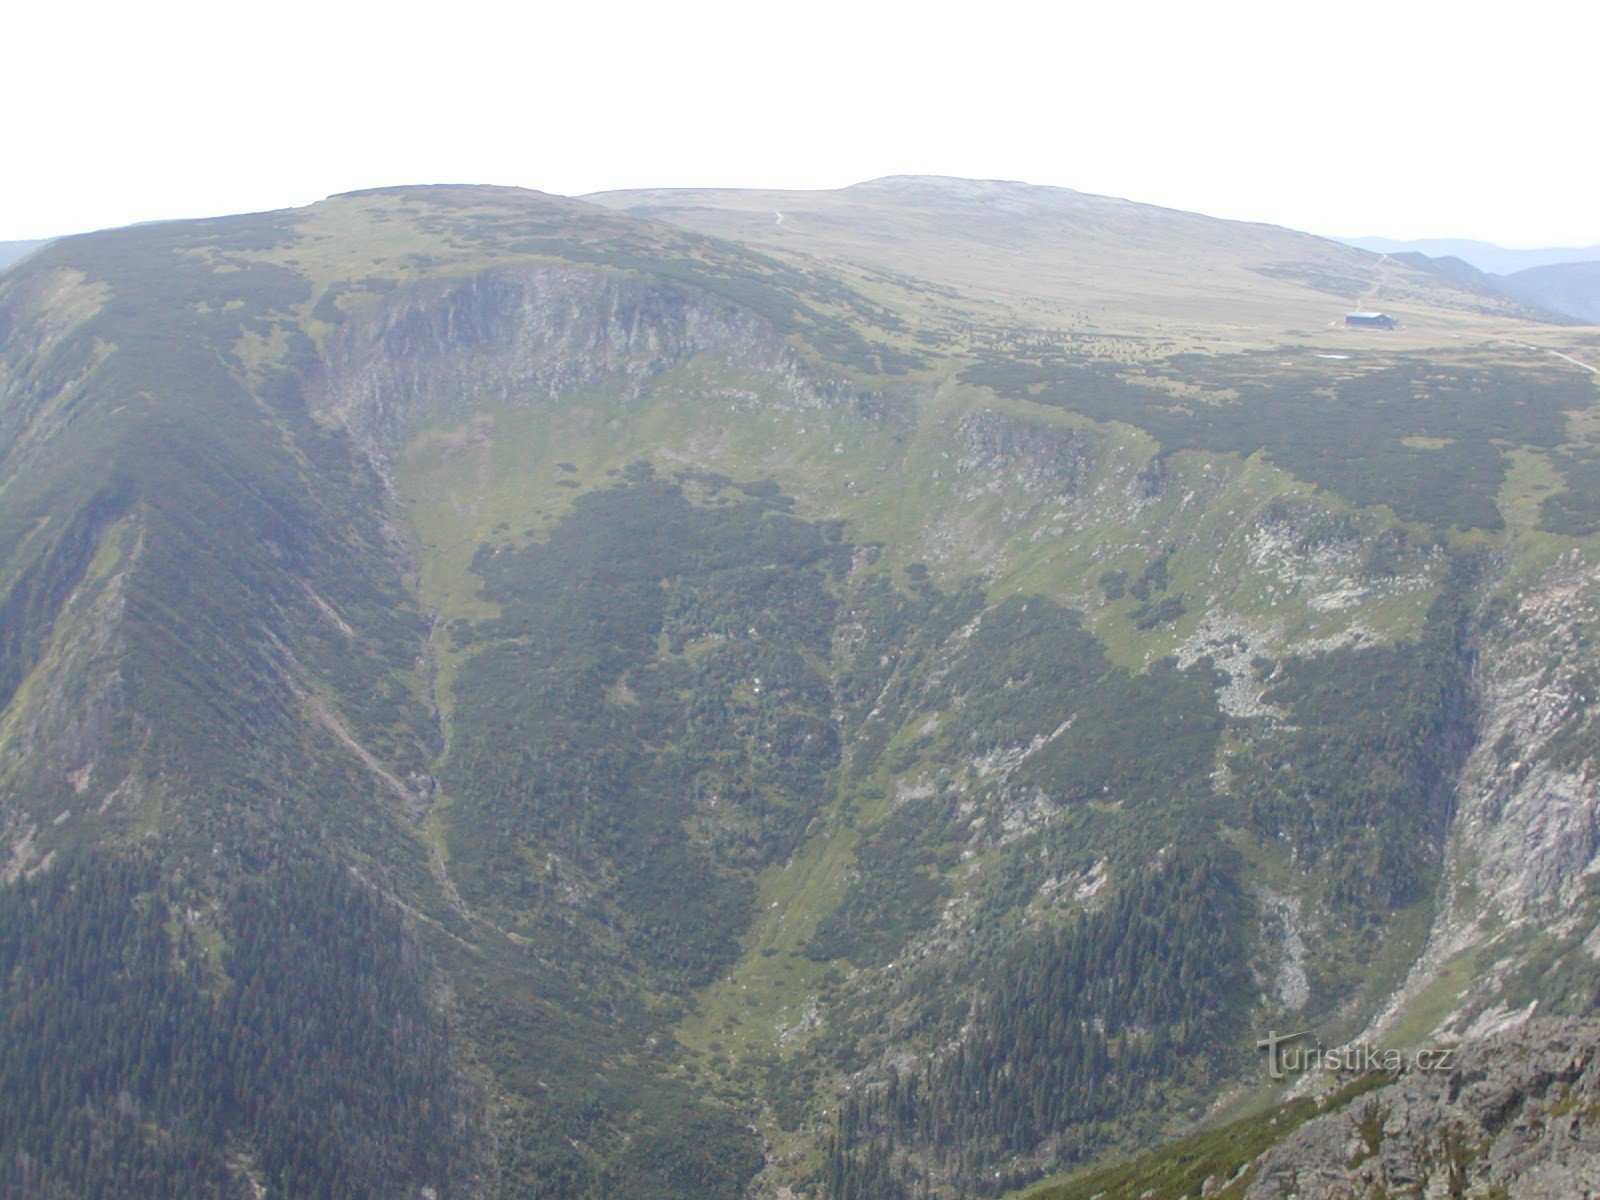 θέα από τη Sněžka στο Studniční hora